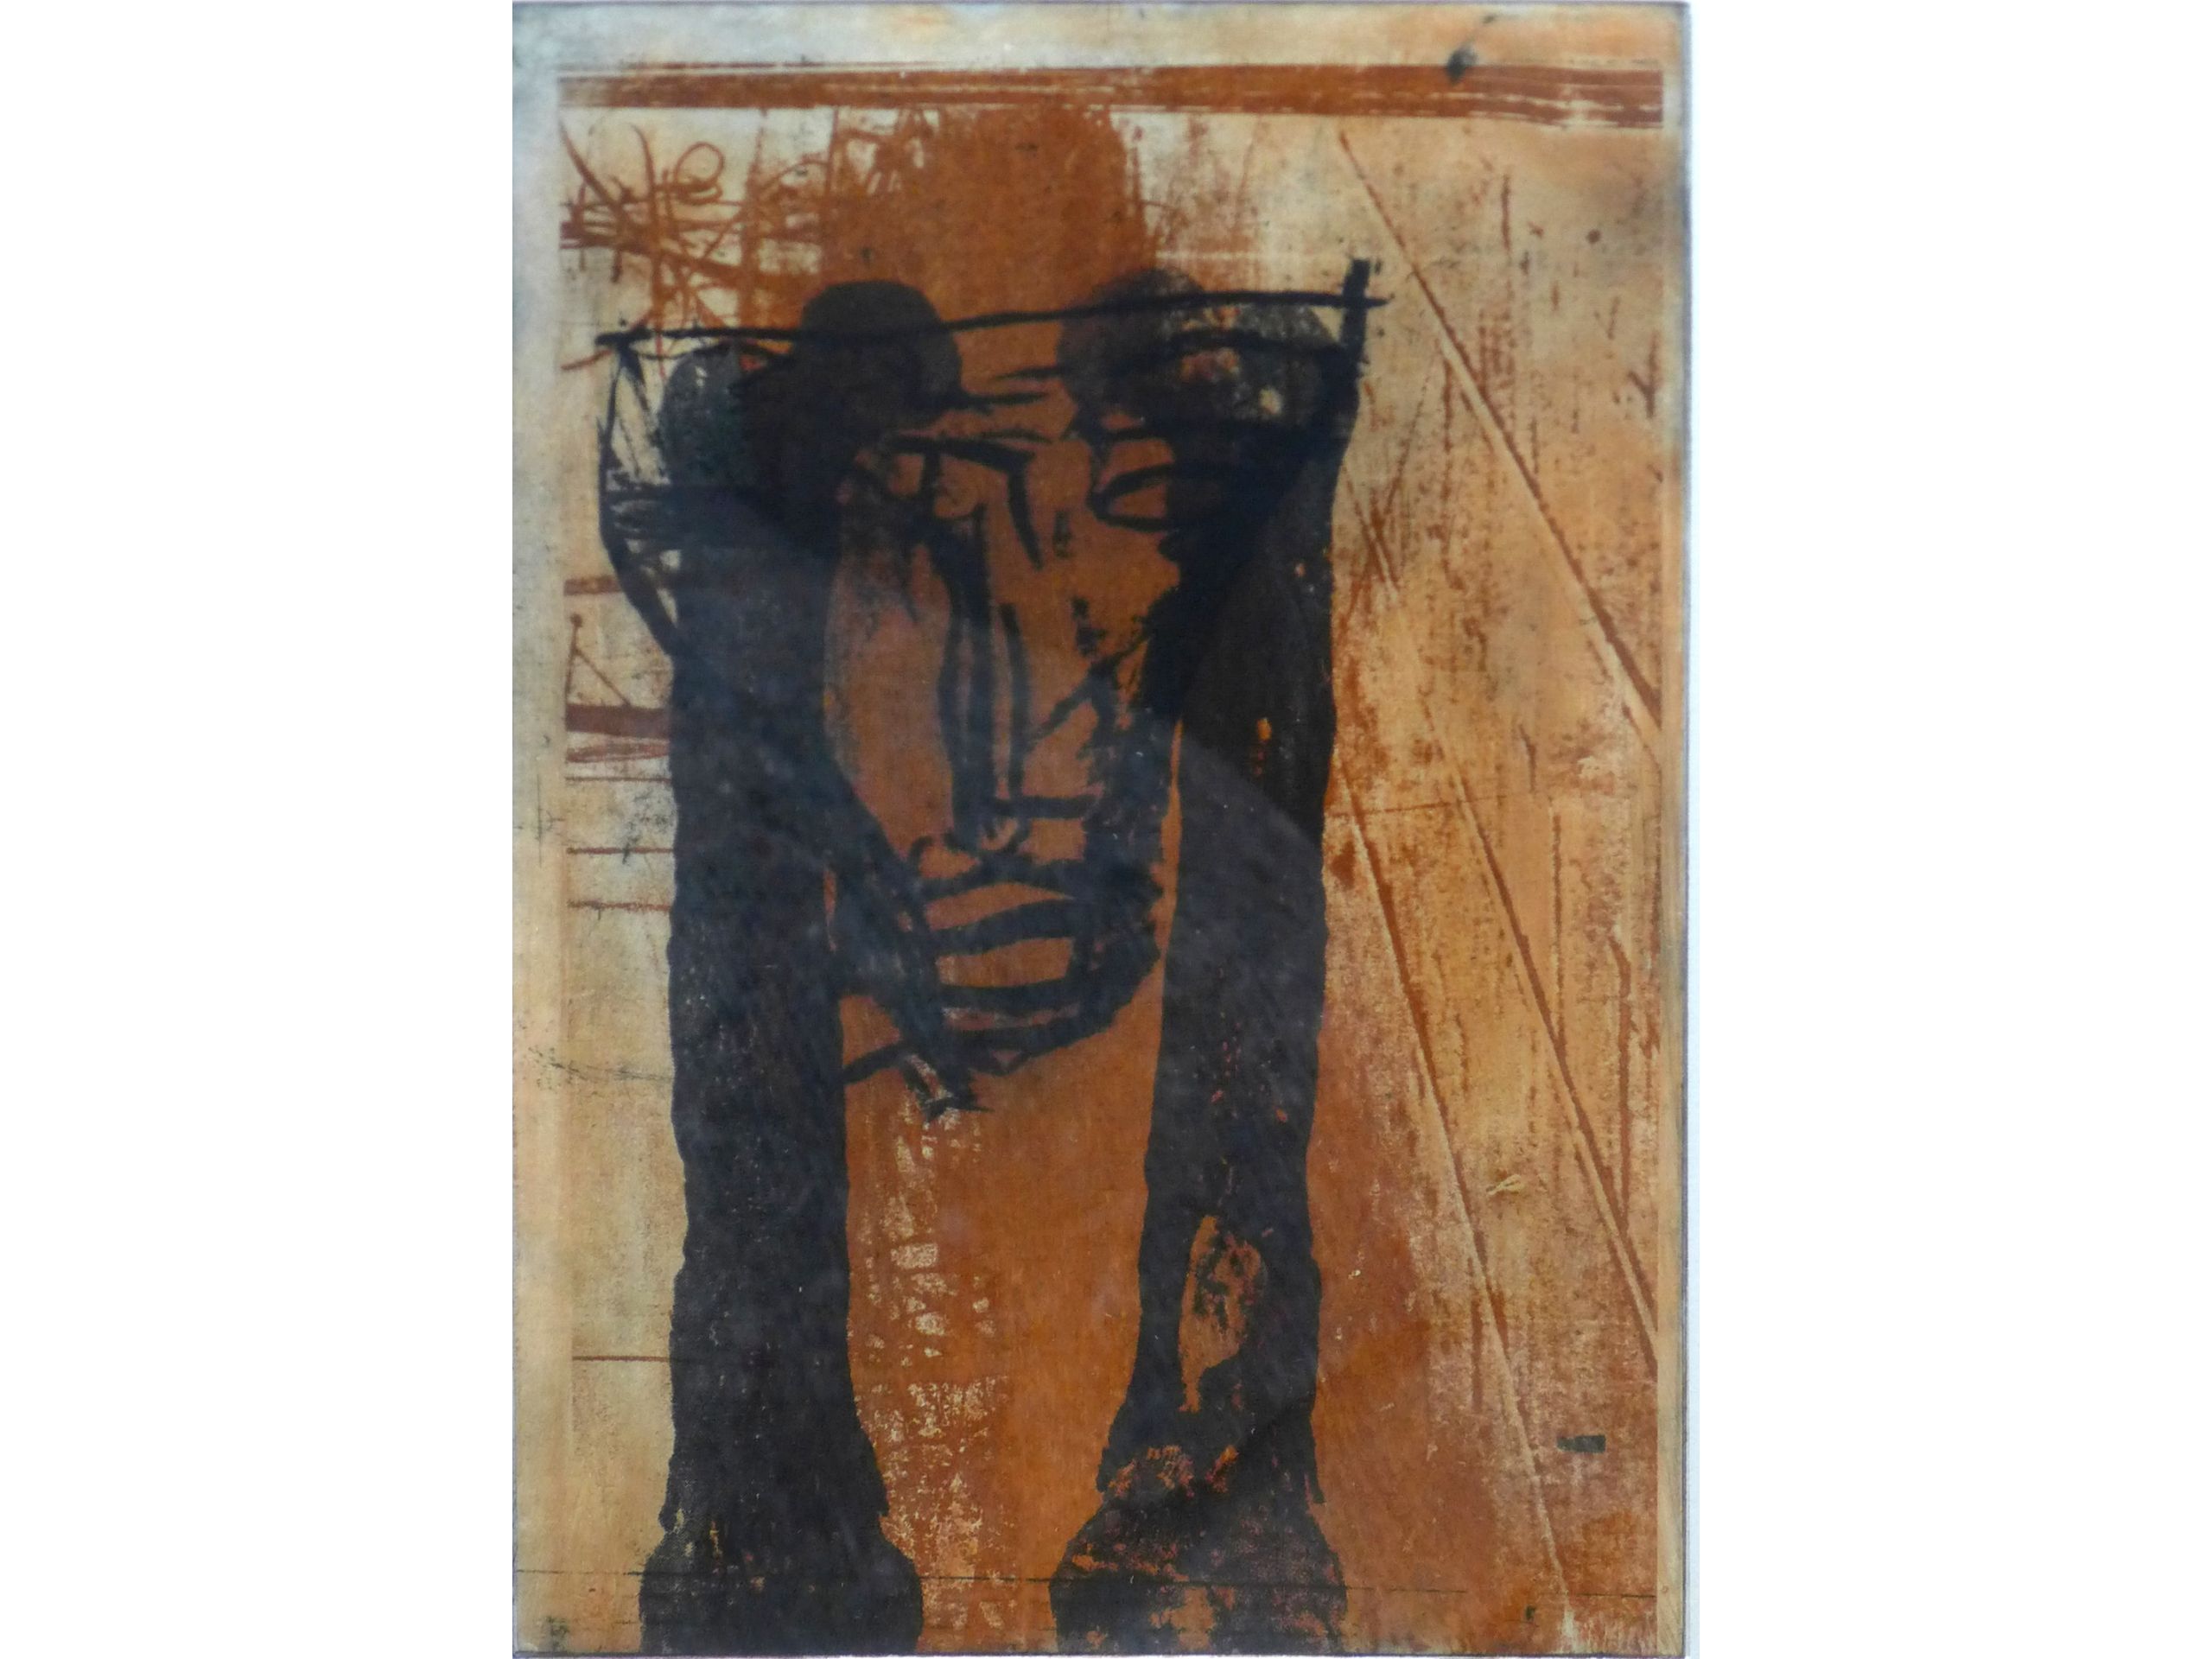 'O.T.' aus der Serie "Shunt", 2003, Farbradierung / Aquatinta, 30 x 20 cm, 120 €